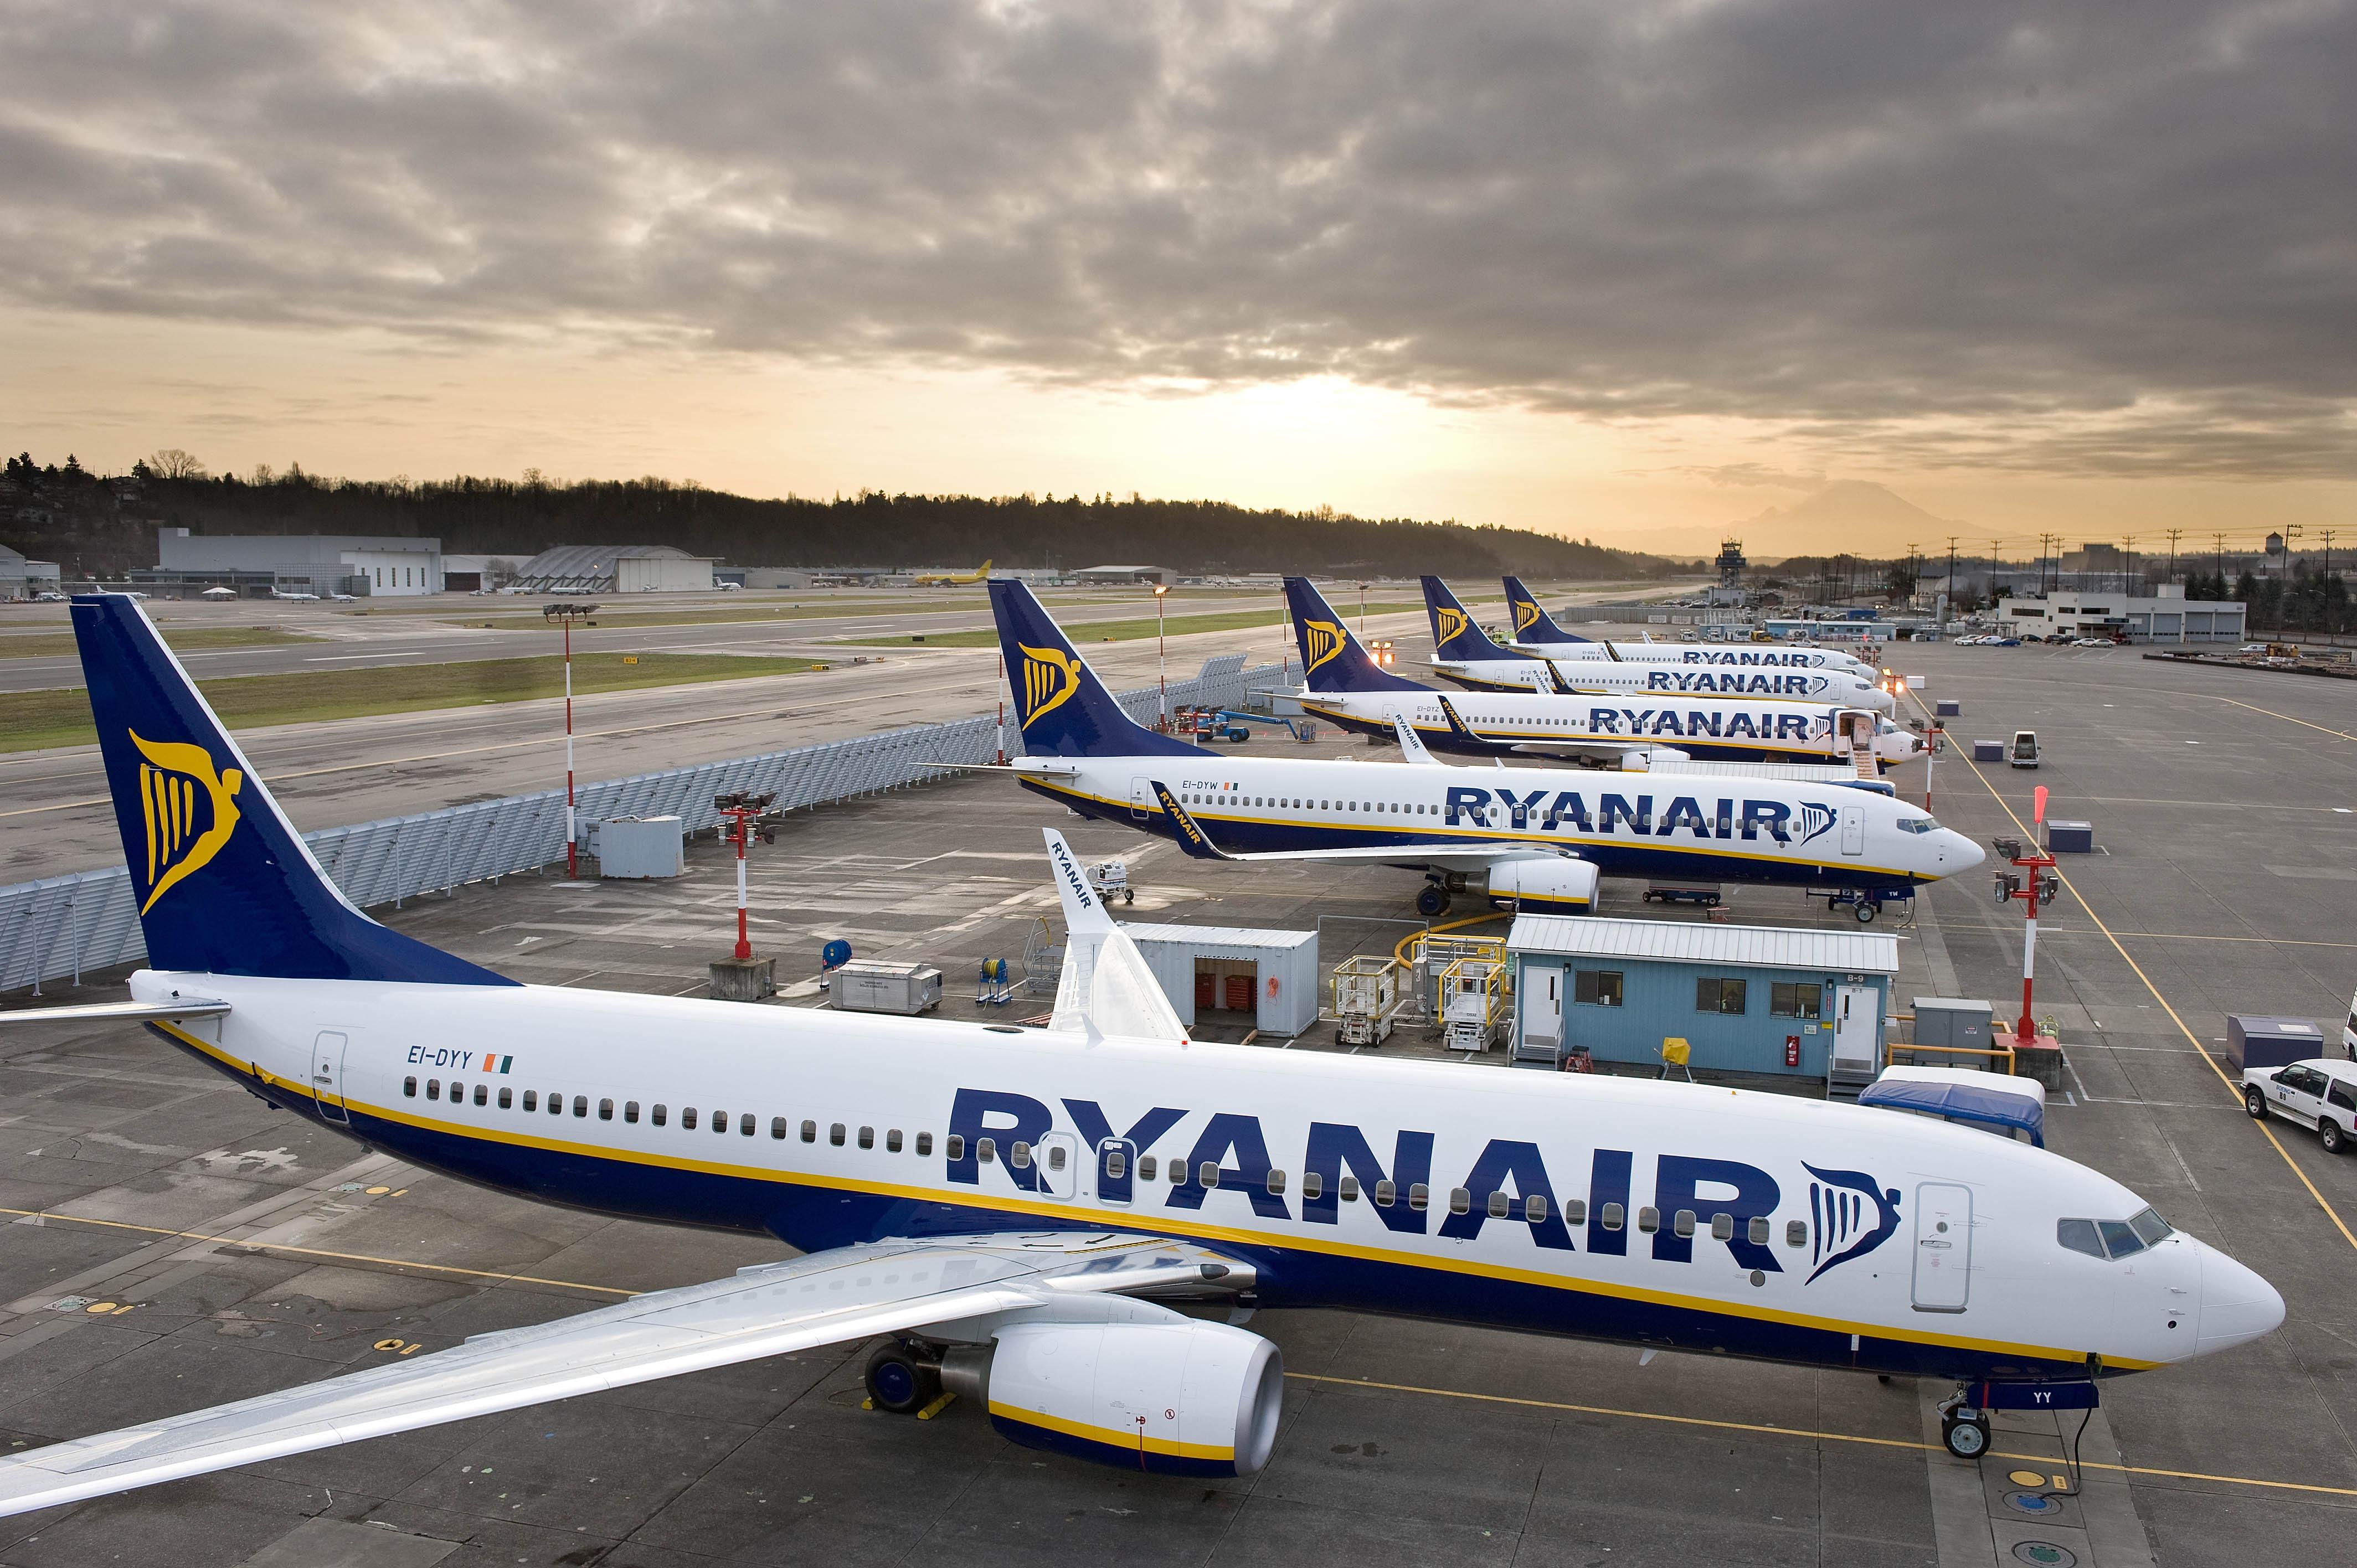 "Совковый менталитет должен быть убит, иначе беда", - блогер описала скандал вокруг Ryanair и украинских властей